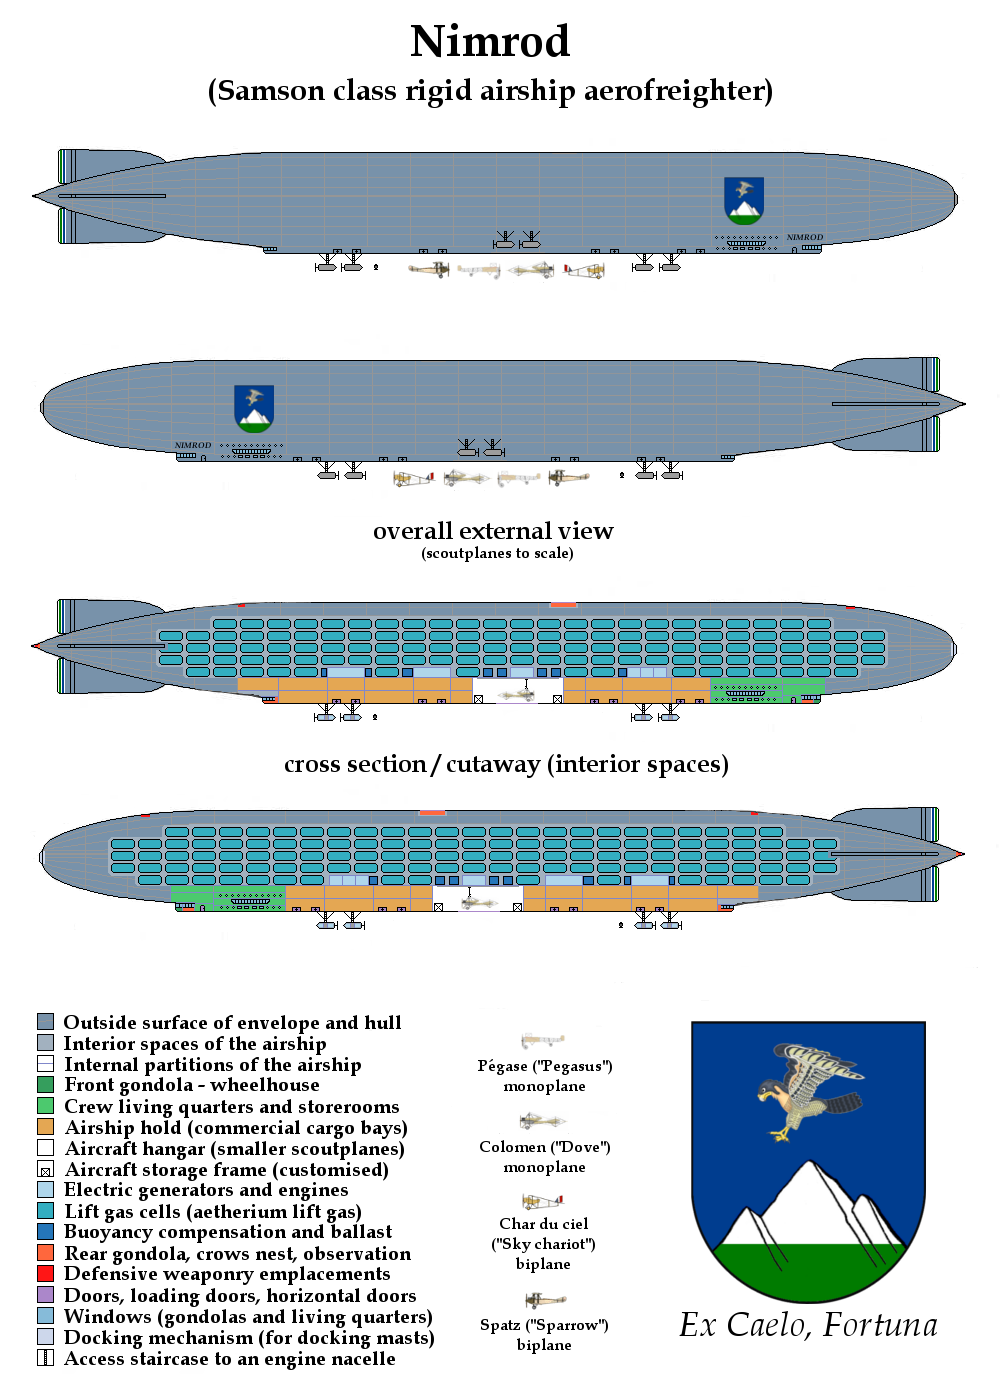 Nimrod fleet - Nimrod rigid airship.png